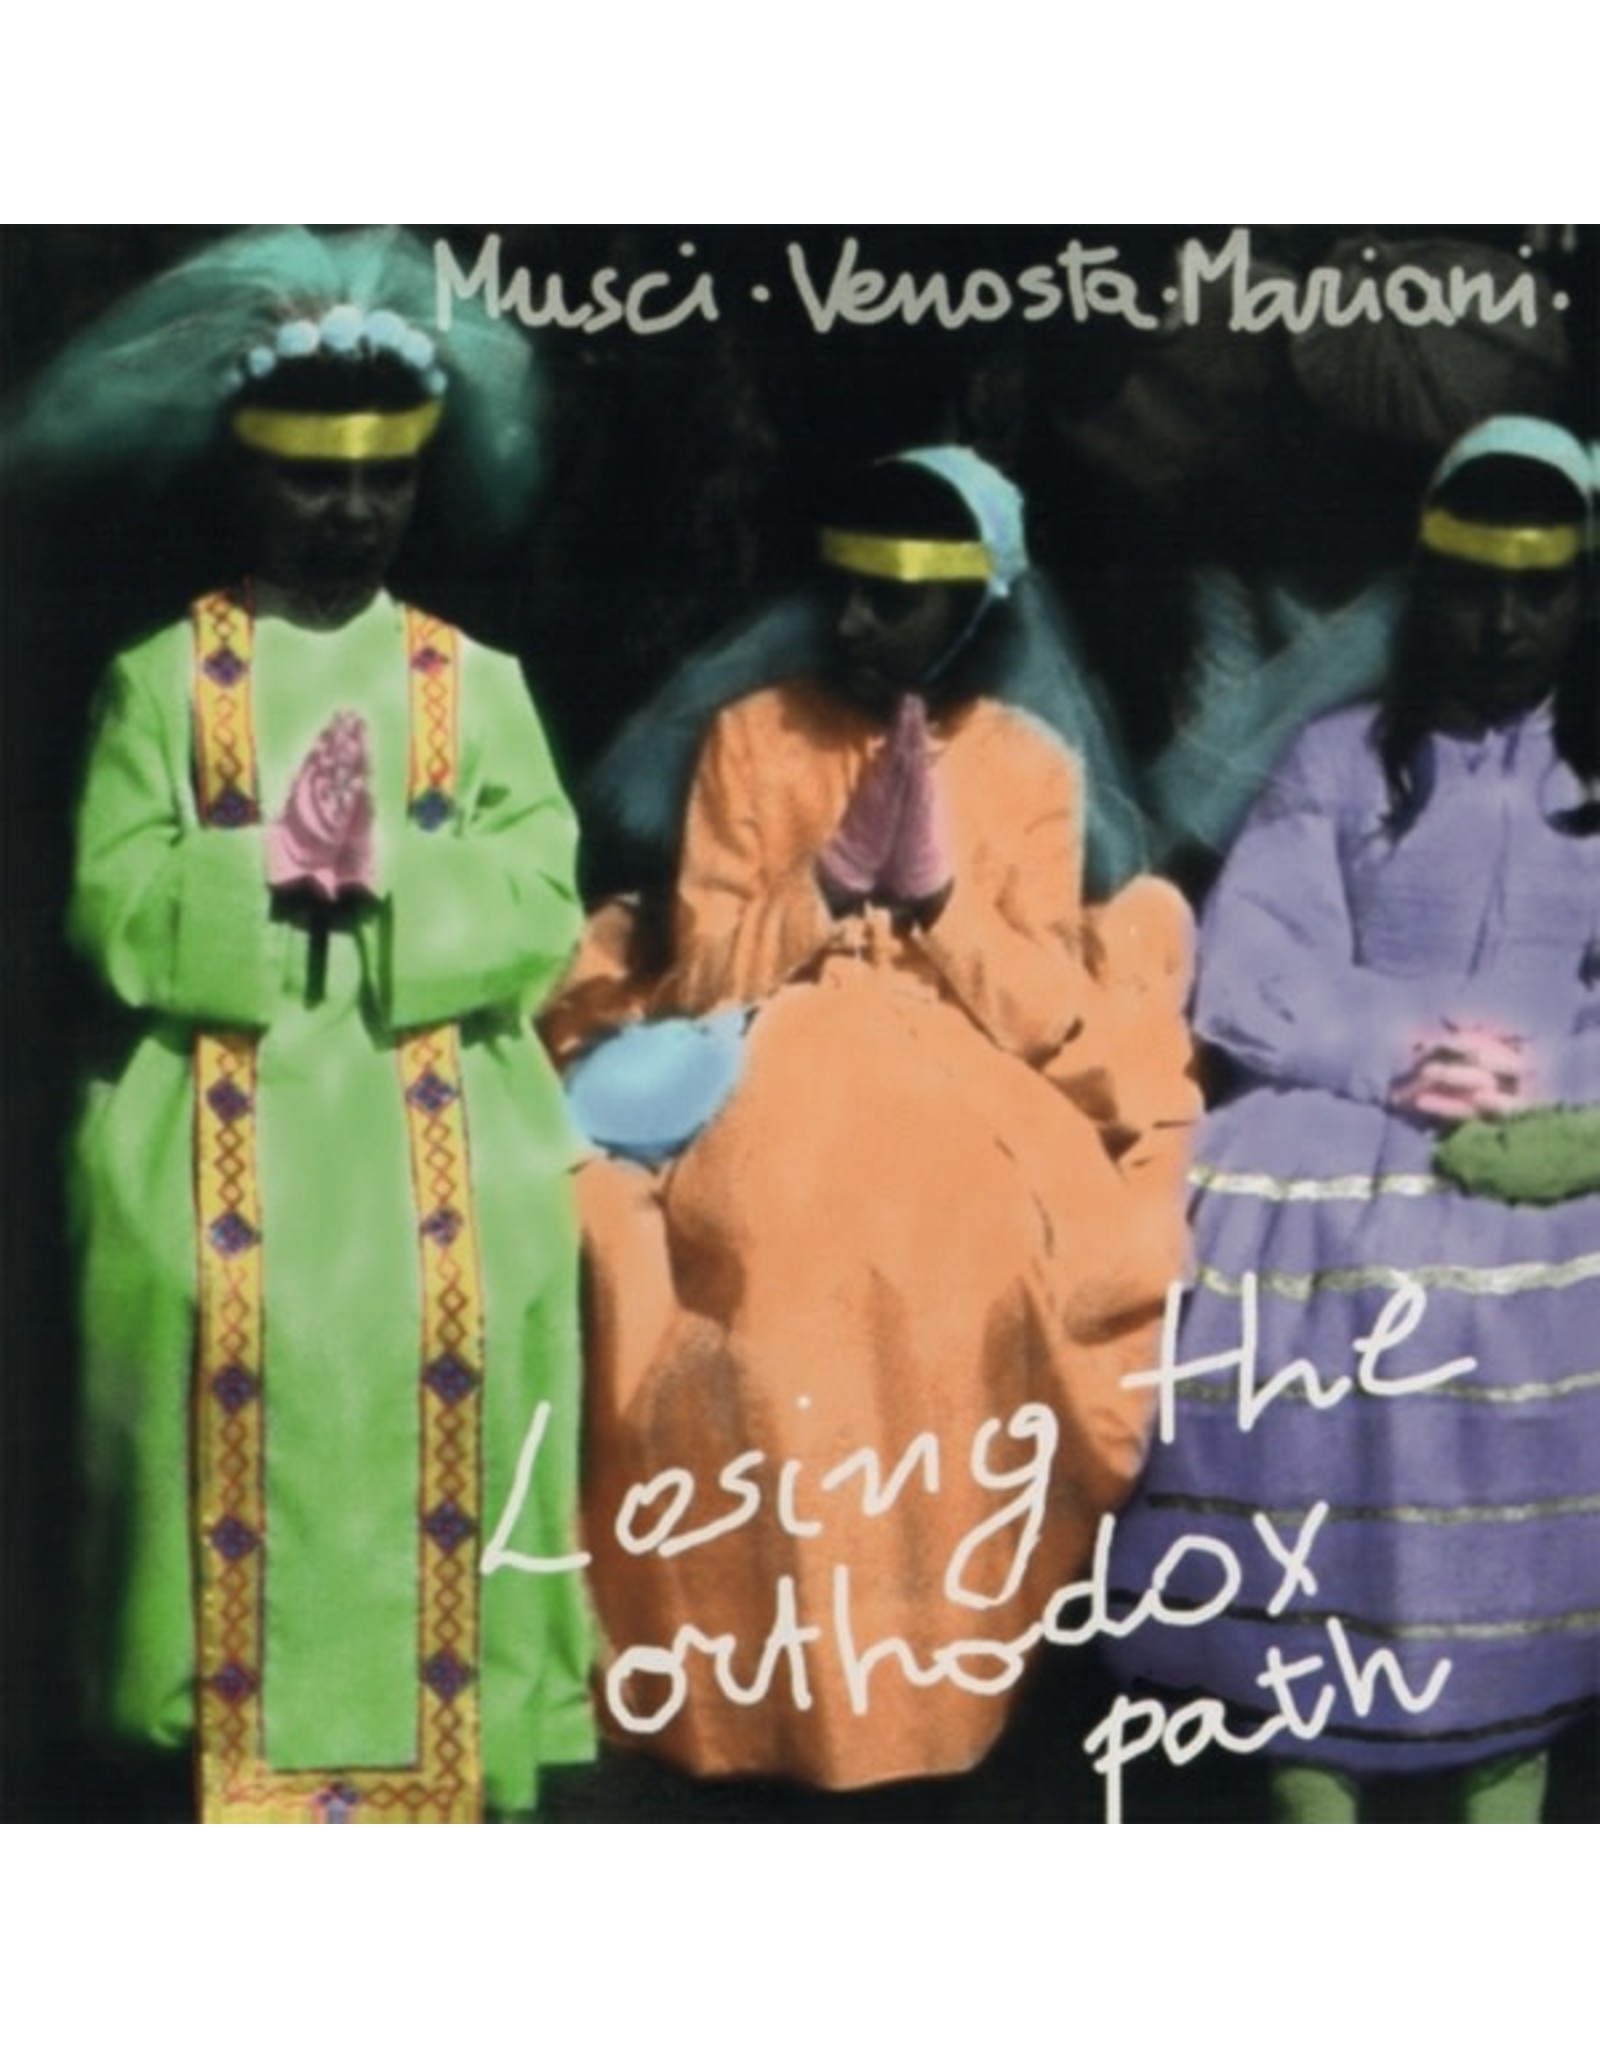 Soave Musci/Giovanni Venosta/Massimo Mariani, Roberto: Losing The Orthodox Path LP